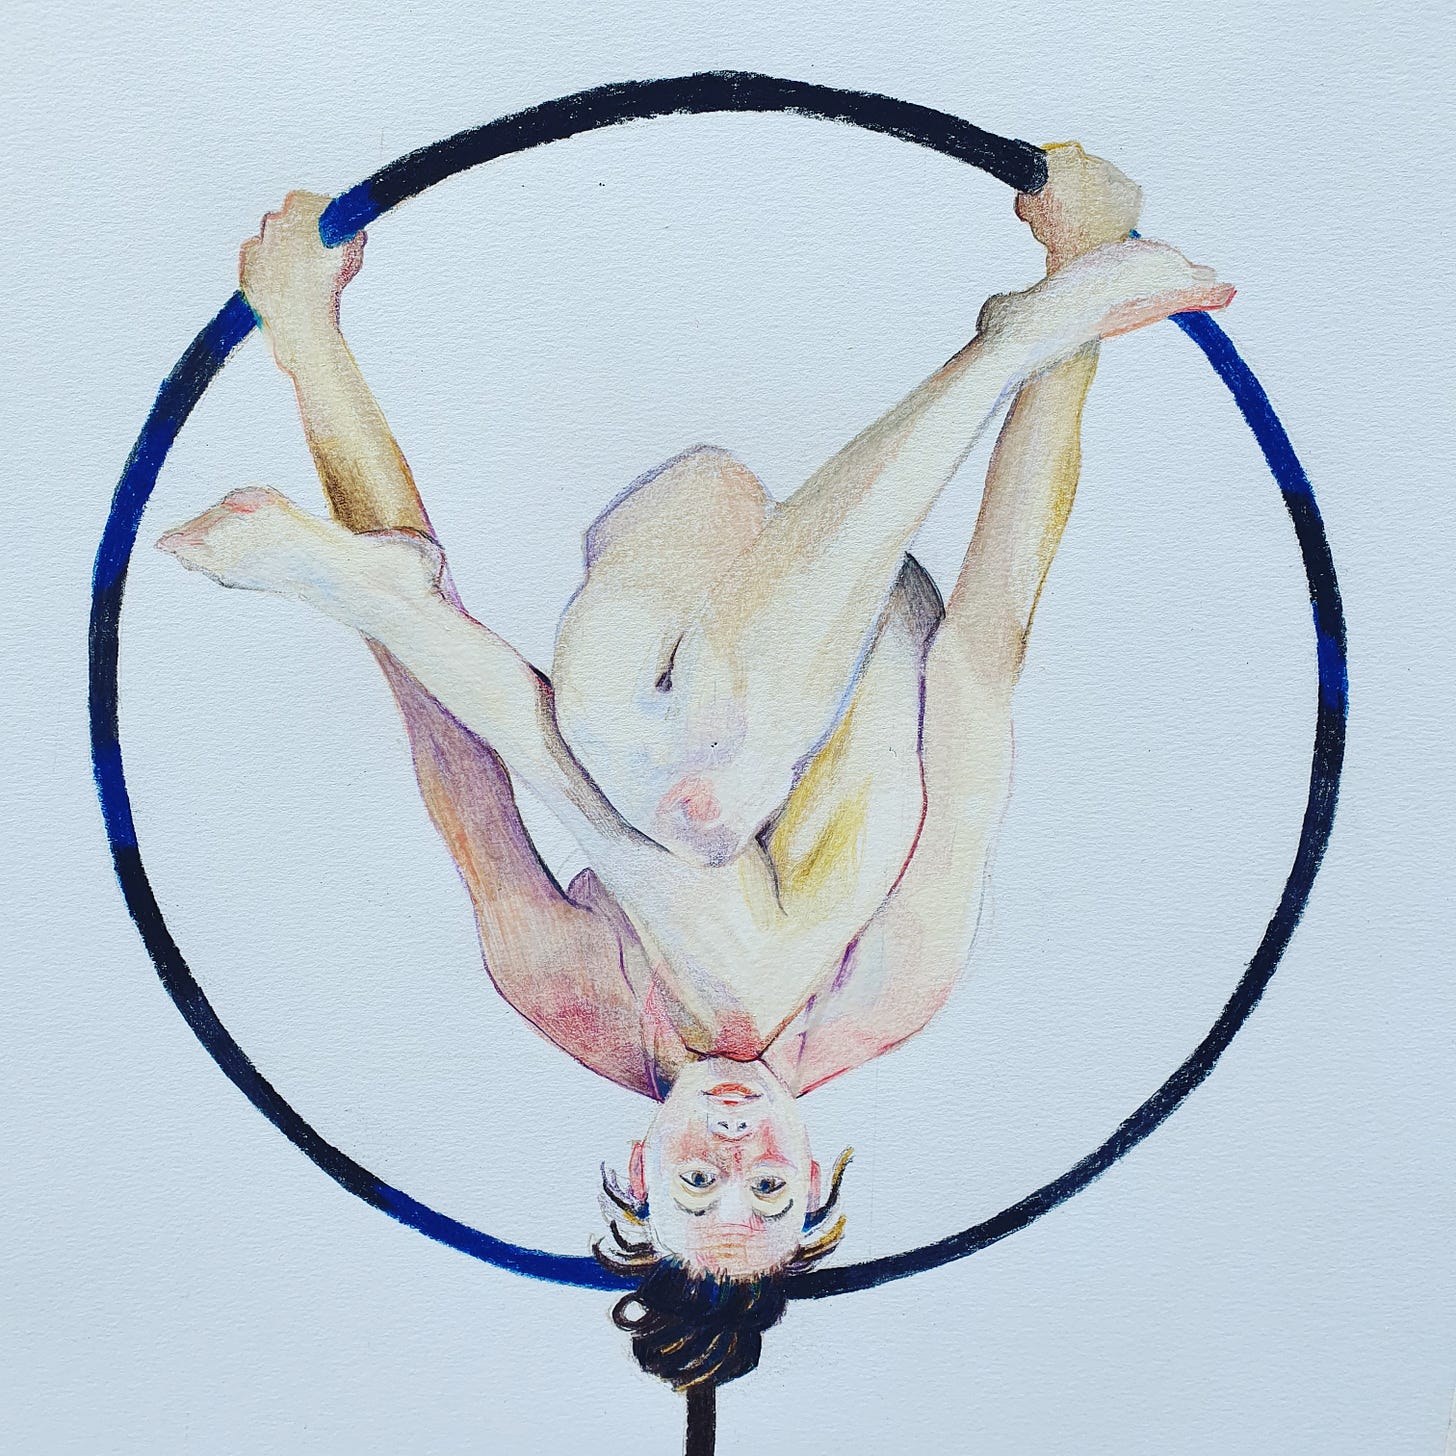 Drawing of athlete and model Freya hanging upside down in a metal hoop